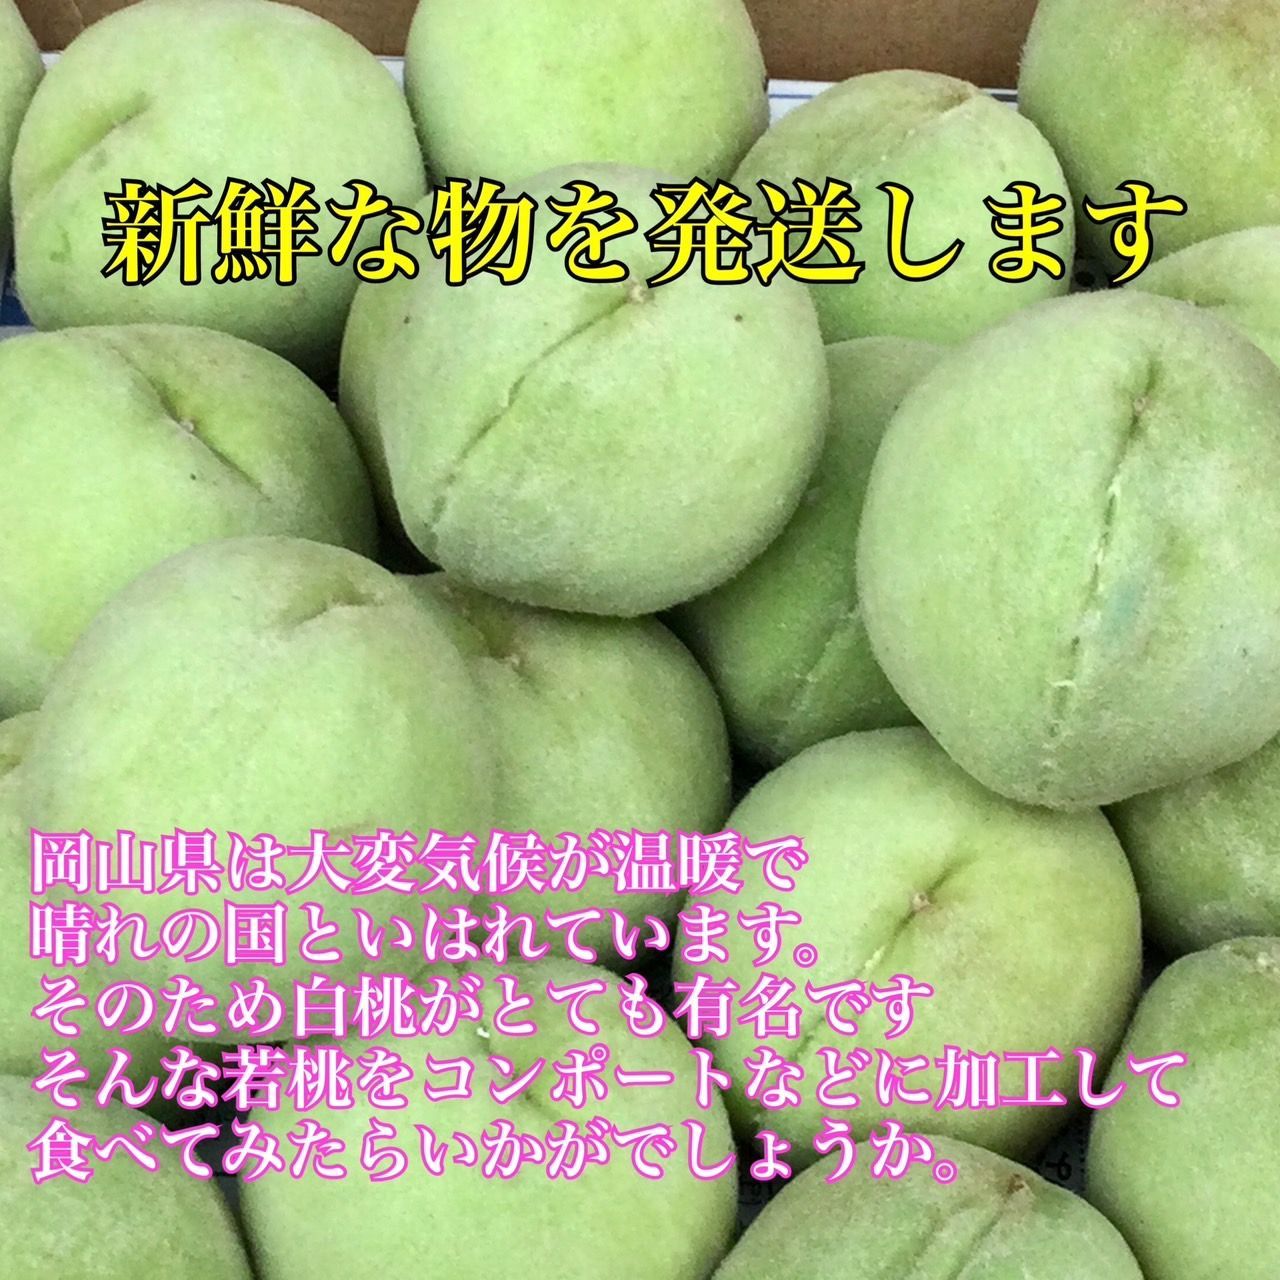 確認用　今季初収穫！清水白桃の若桃　4.5kg